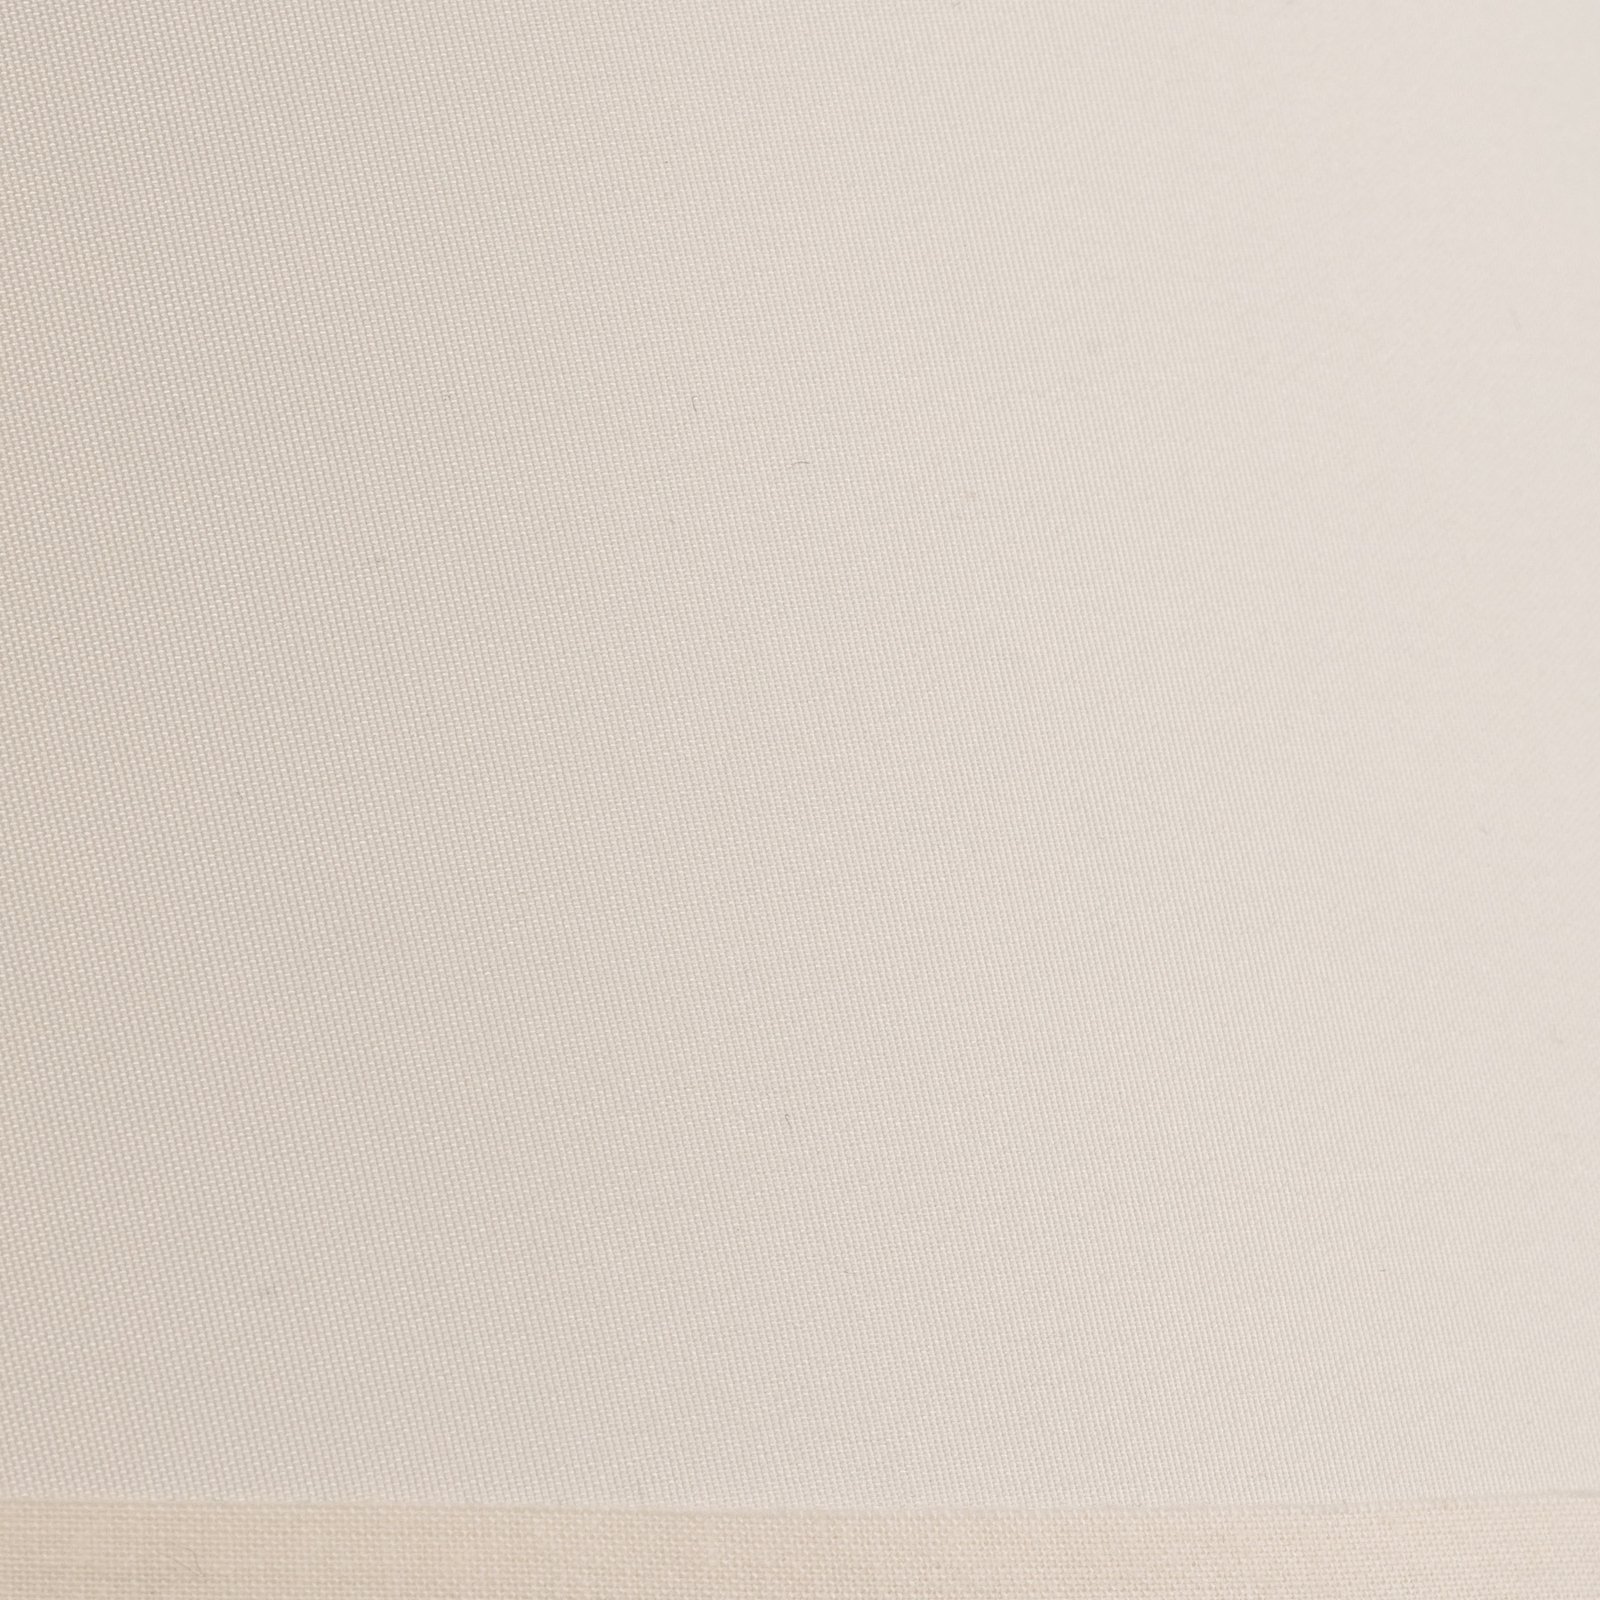 Klosz Sofia wysokość 21 cm, ecru/biały